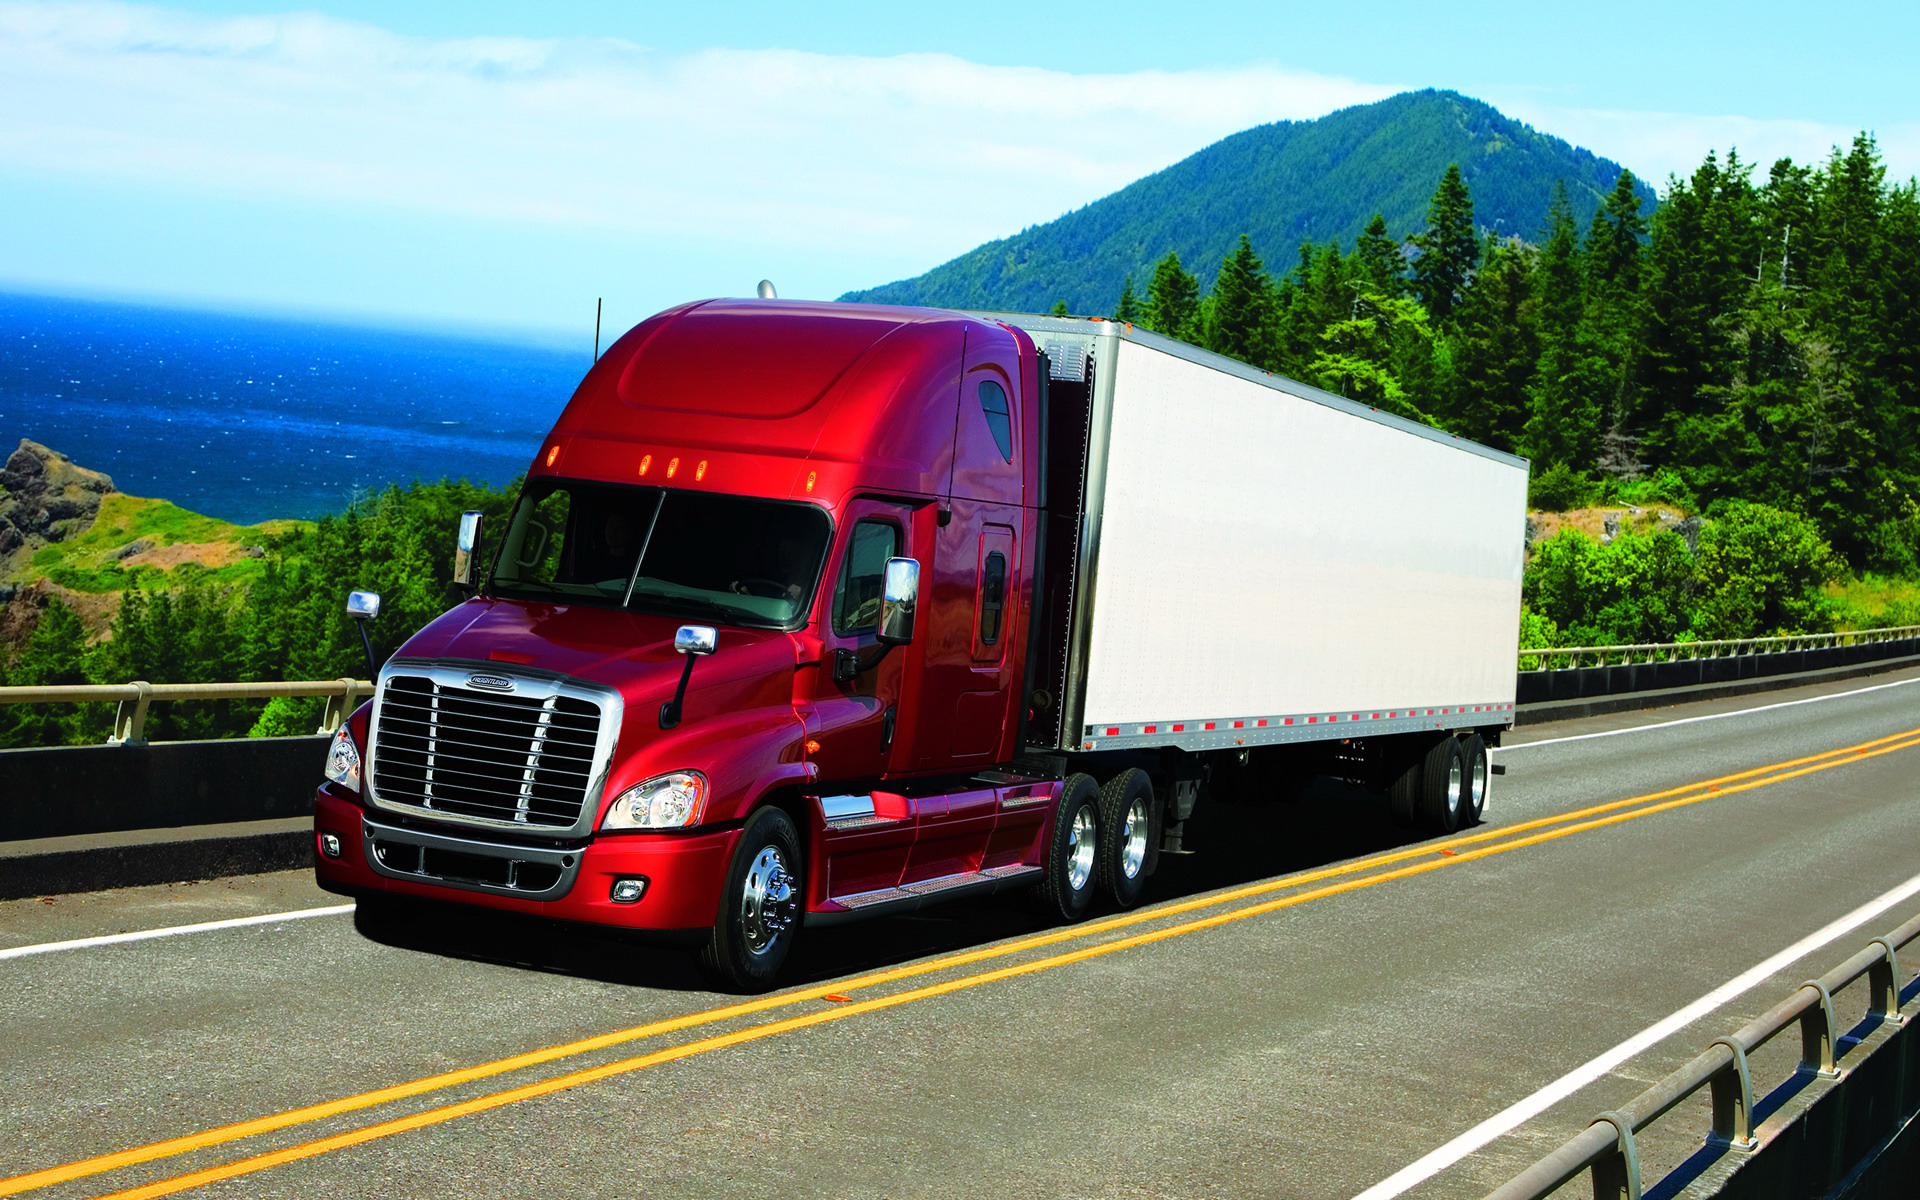 Download full size Trucks wallpaper / Vehicles / 1920x1200